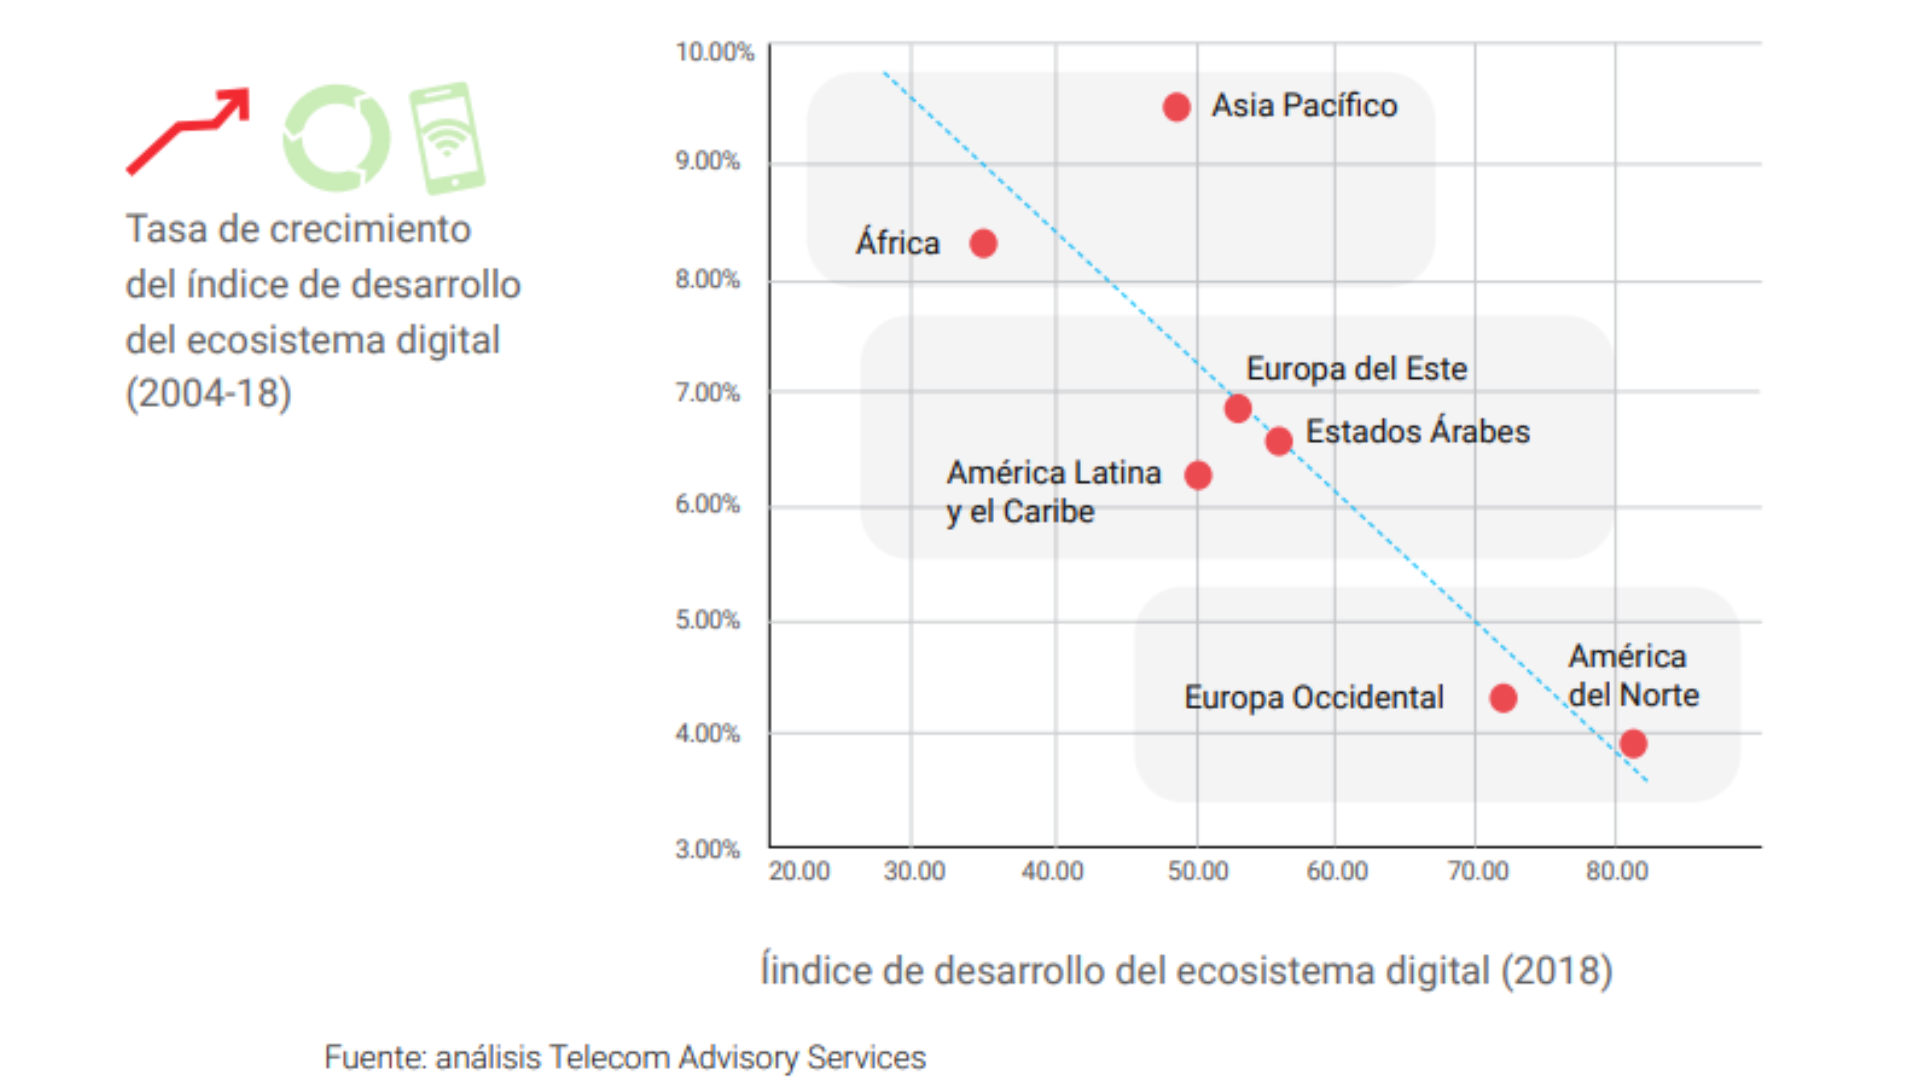 Tasa de crecimiento del indice de desarrollo del ecosistema digital